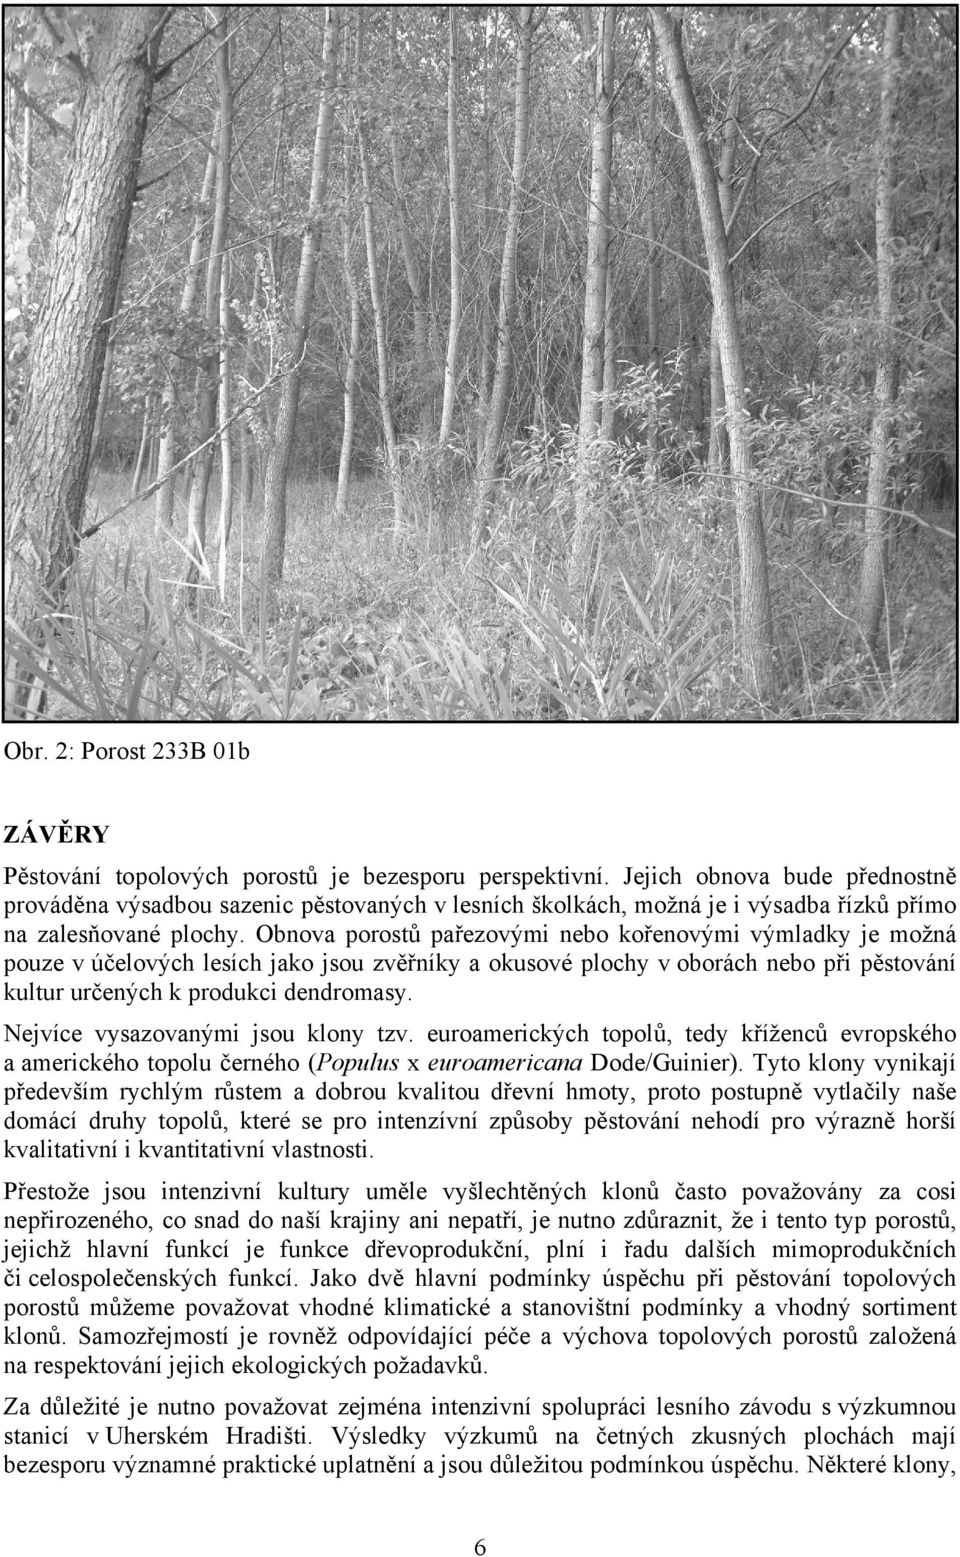 Obnova porostů pařezovými nebo kořenovými výmladky je možná pouze v účelových lesích jako jsou zvěřníky a okusové plochy v oborách nebo při pěstování kultur určených k produkci dendromasy.